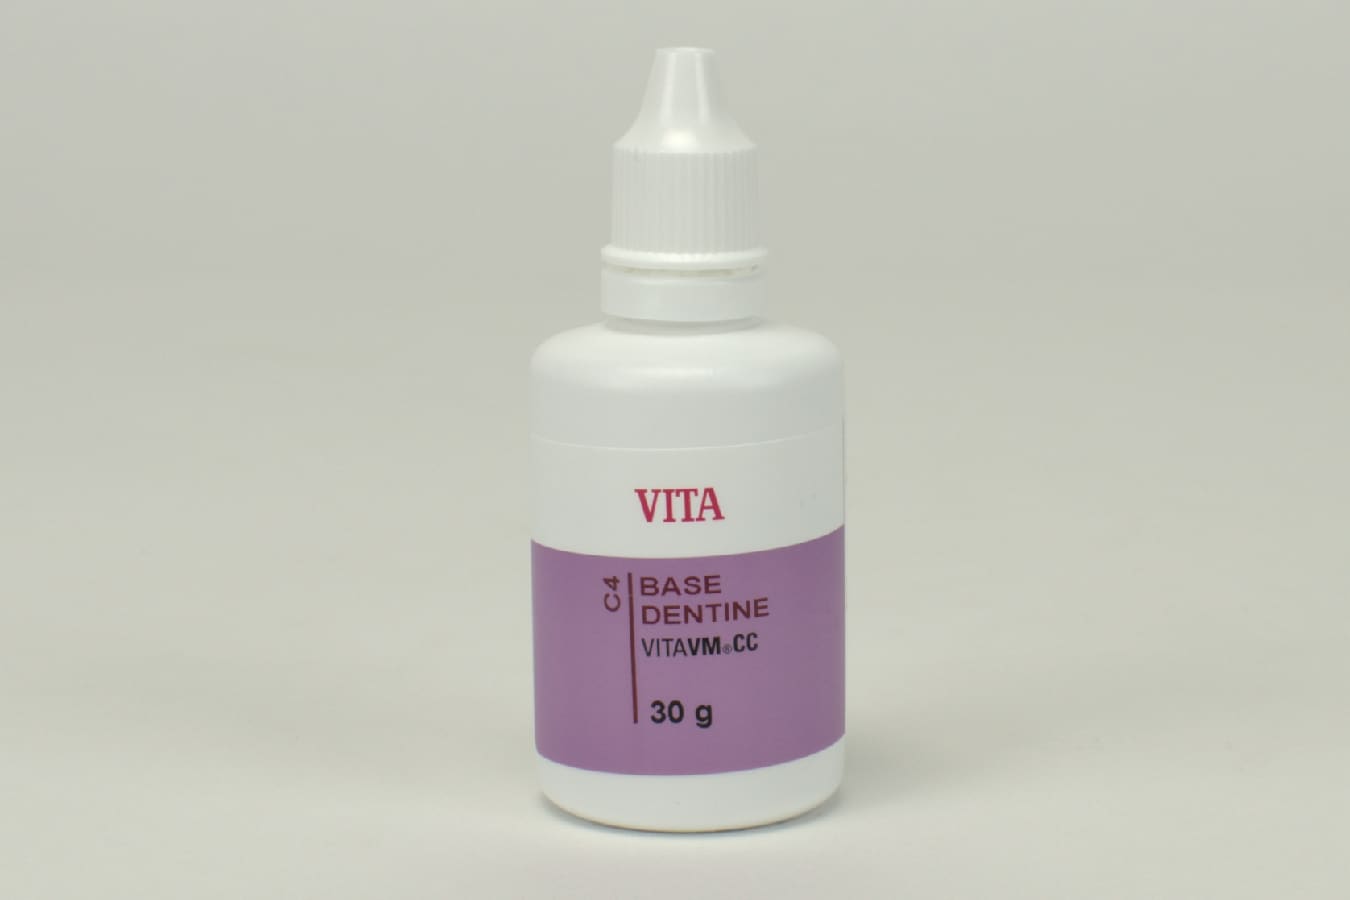 Vita VM CC Base Dentin C4 30g